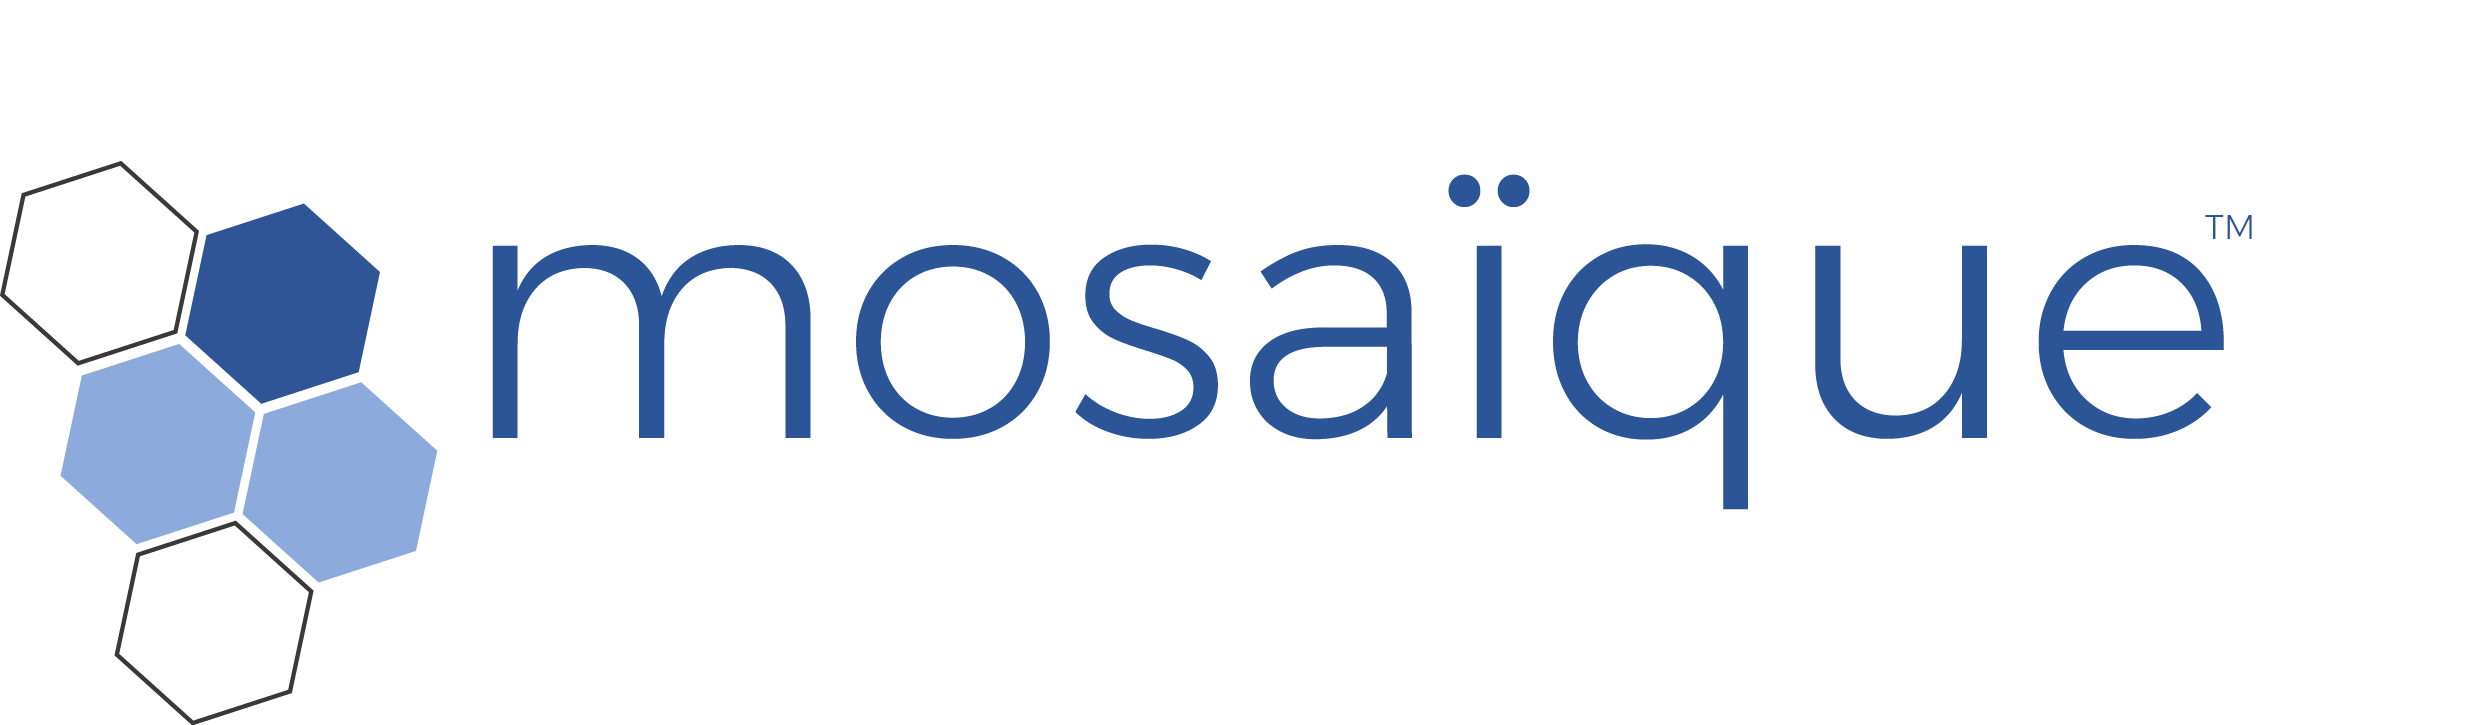 mosaique-logo (1).png